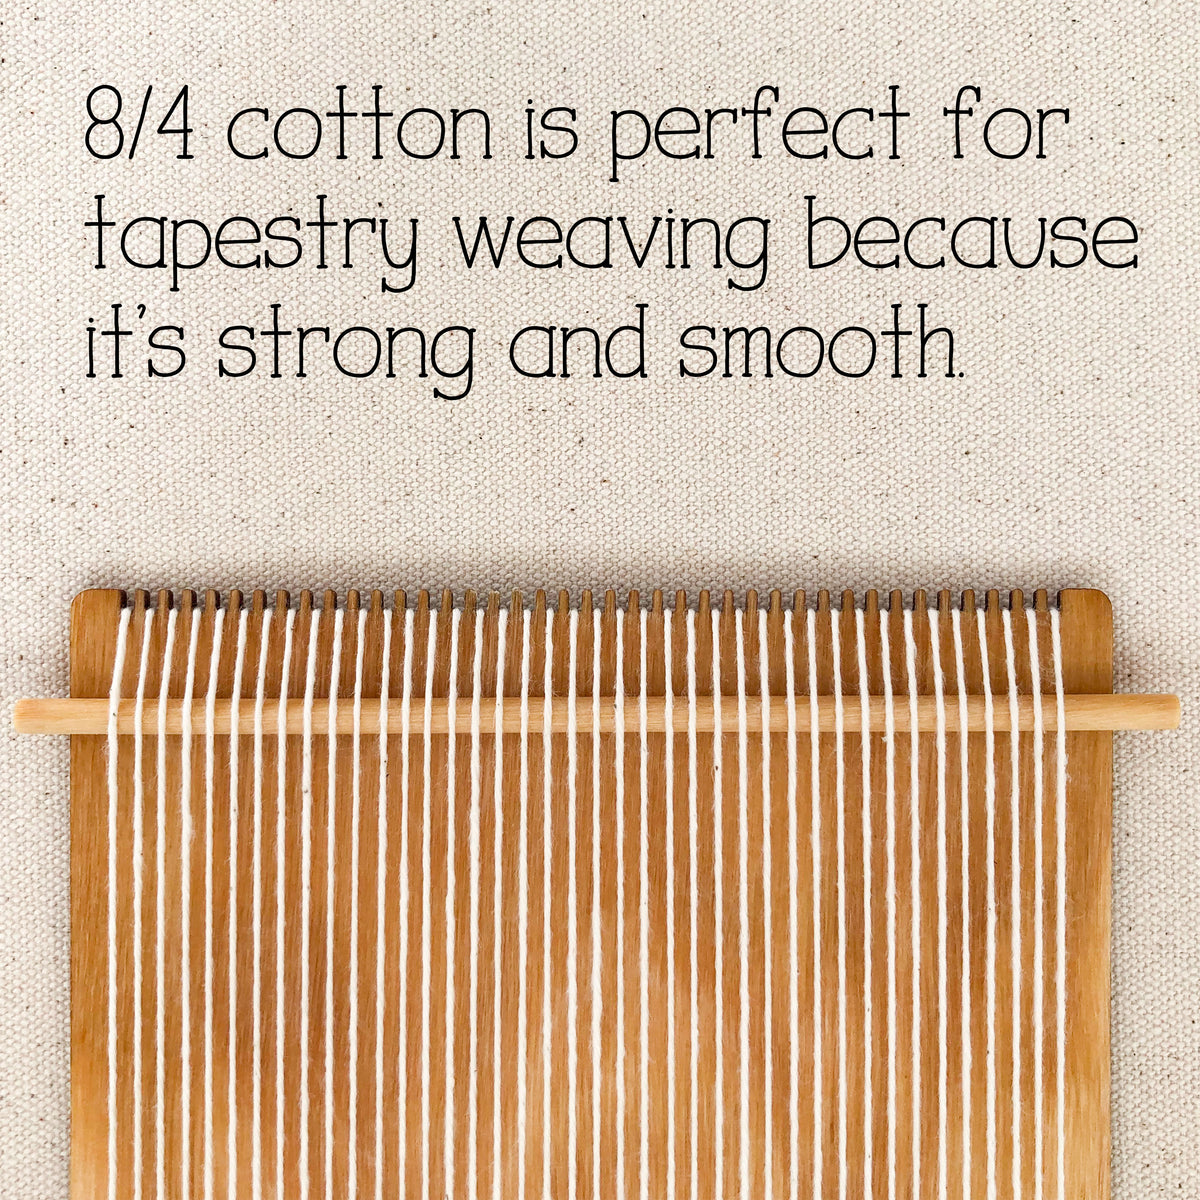 Weave the World - Rainforest - Weaving Kit